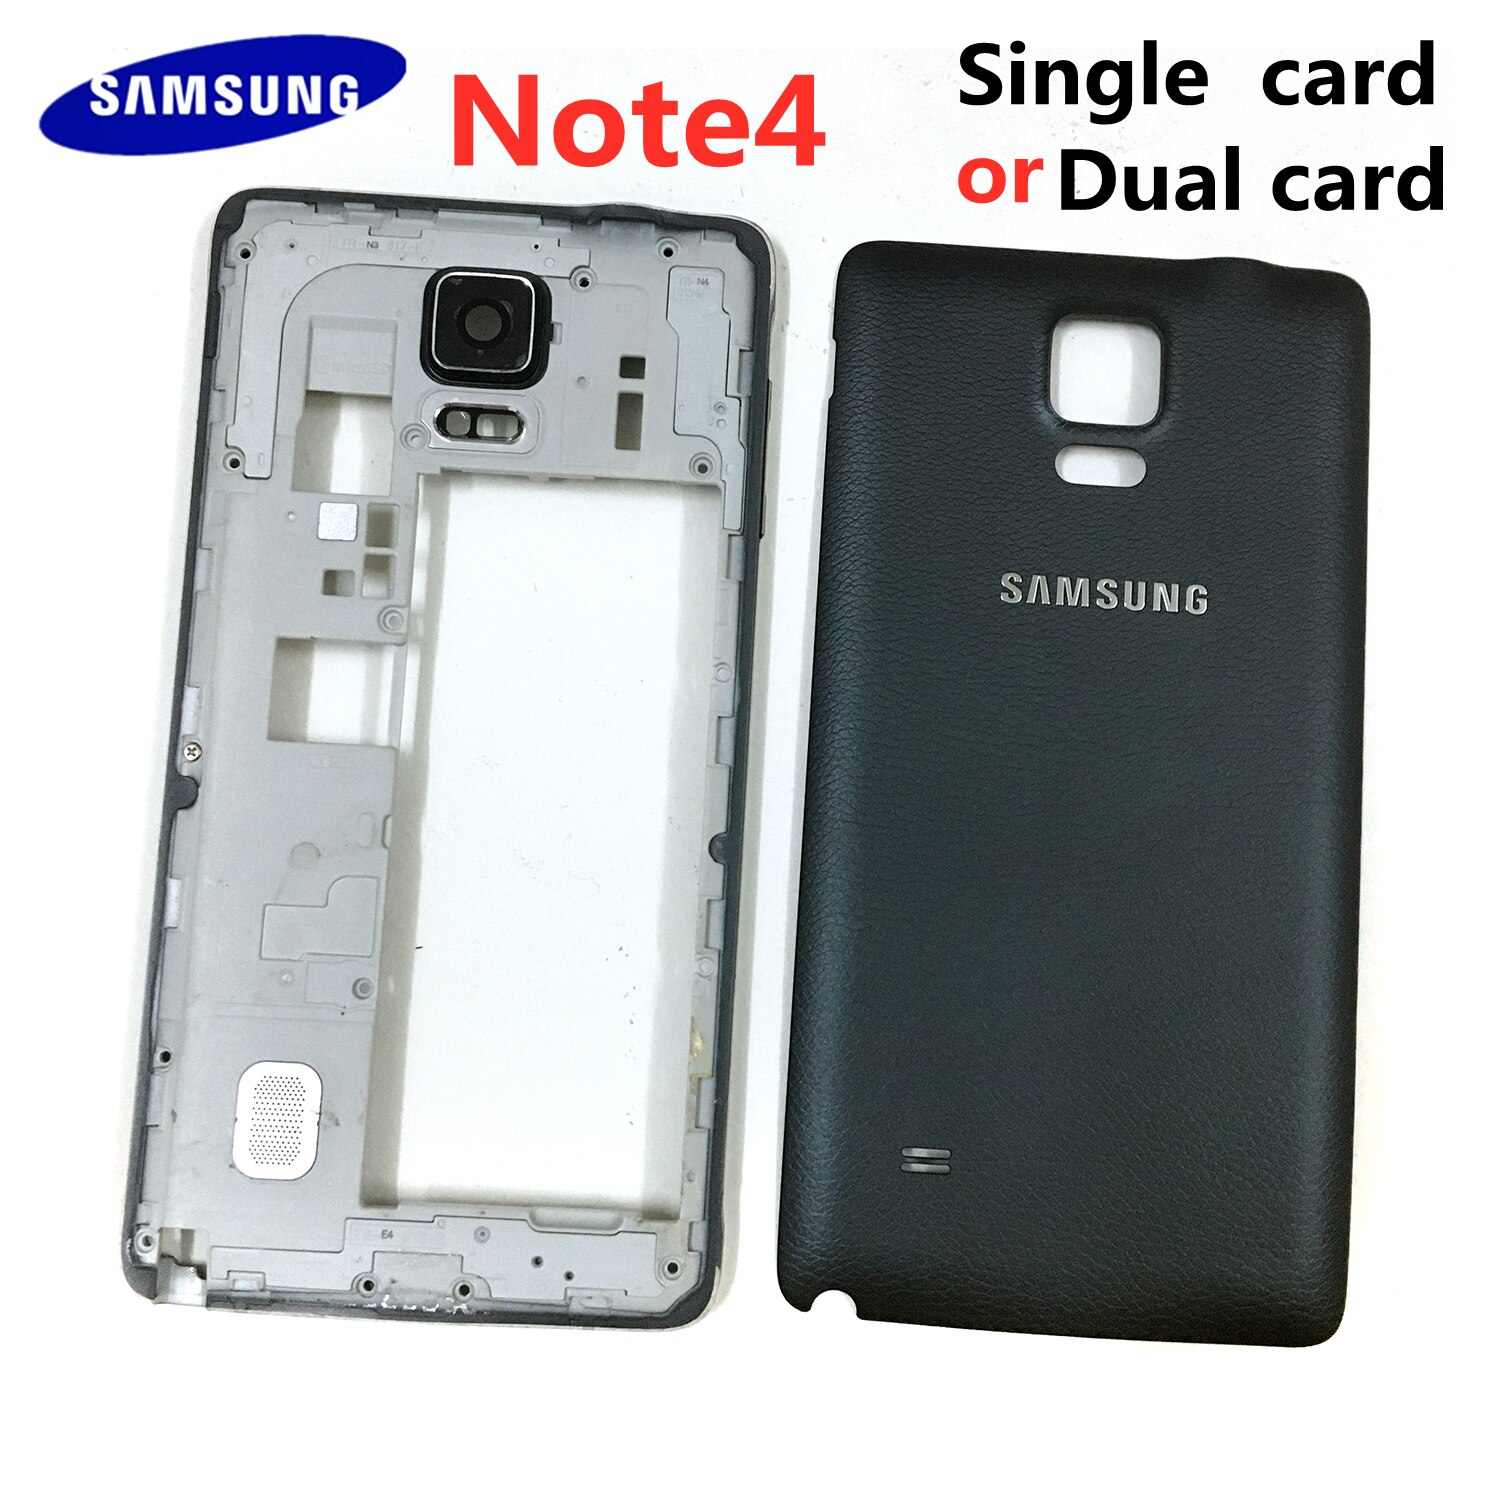 Coque pour Samsung Galaxy Note 4, N910, N9100, cadre central en métal, lunette et couvercle arrière de la batterie (version double ou simple carte)